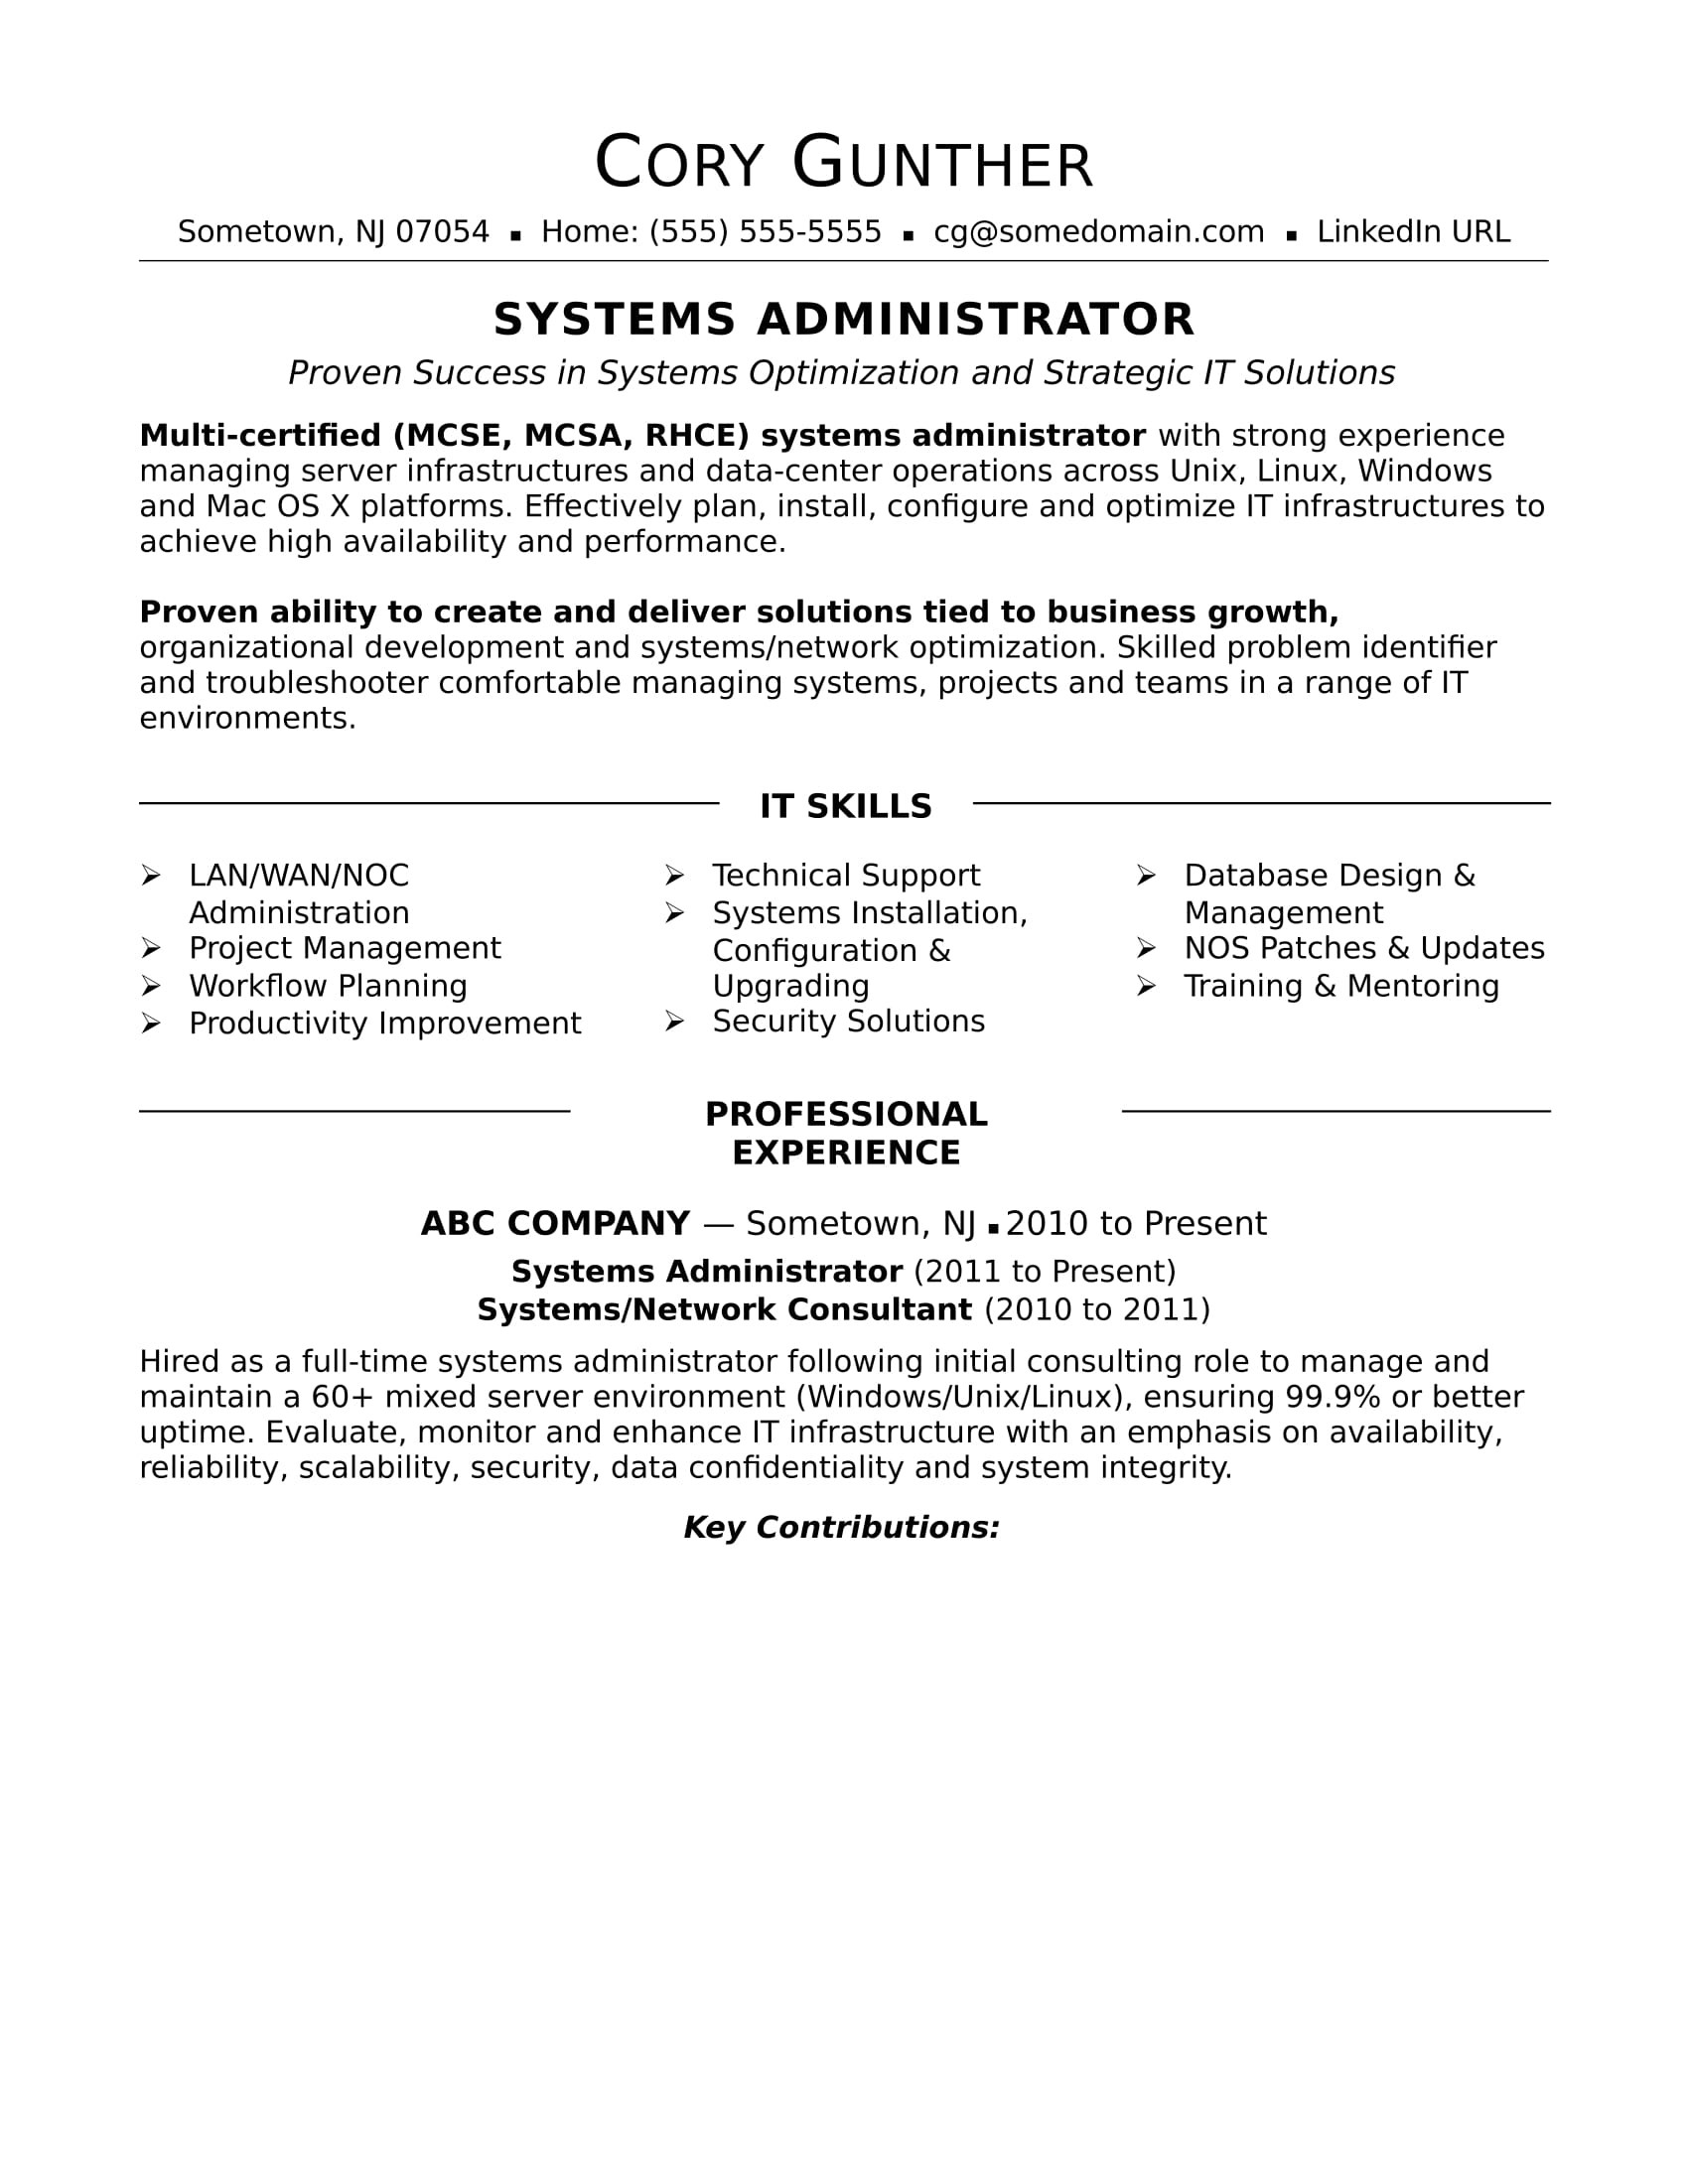 Linux Administrator Resume Sample for Experience Sample Resume for An Experienced Systems Administrator Monster.com